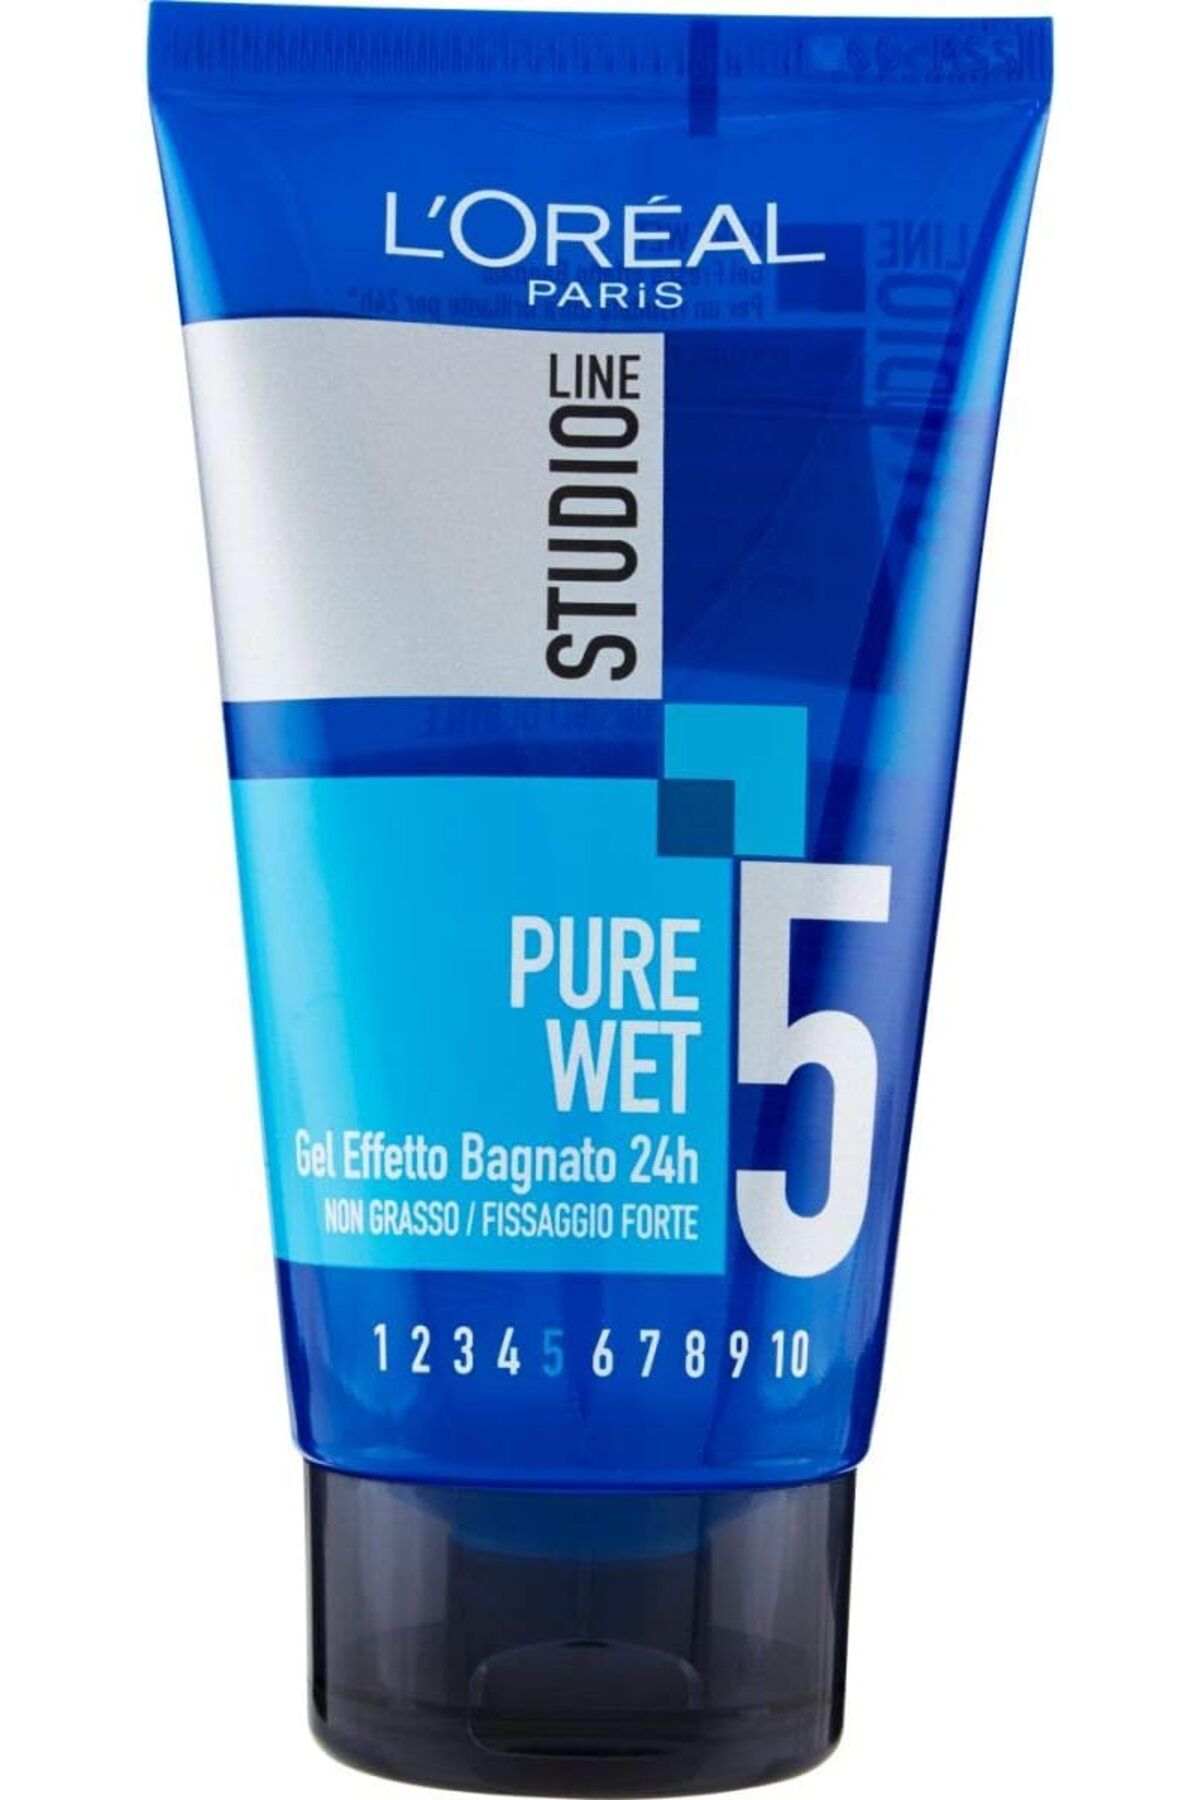 L'Oreal Paris Studio Line Pure Wet 24 Saat Islak Görünüm Güçlü Sabitleme Saç Jölesi 150 ml